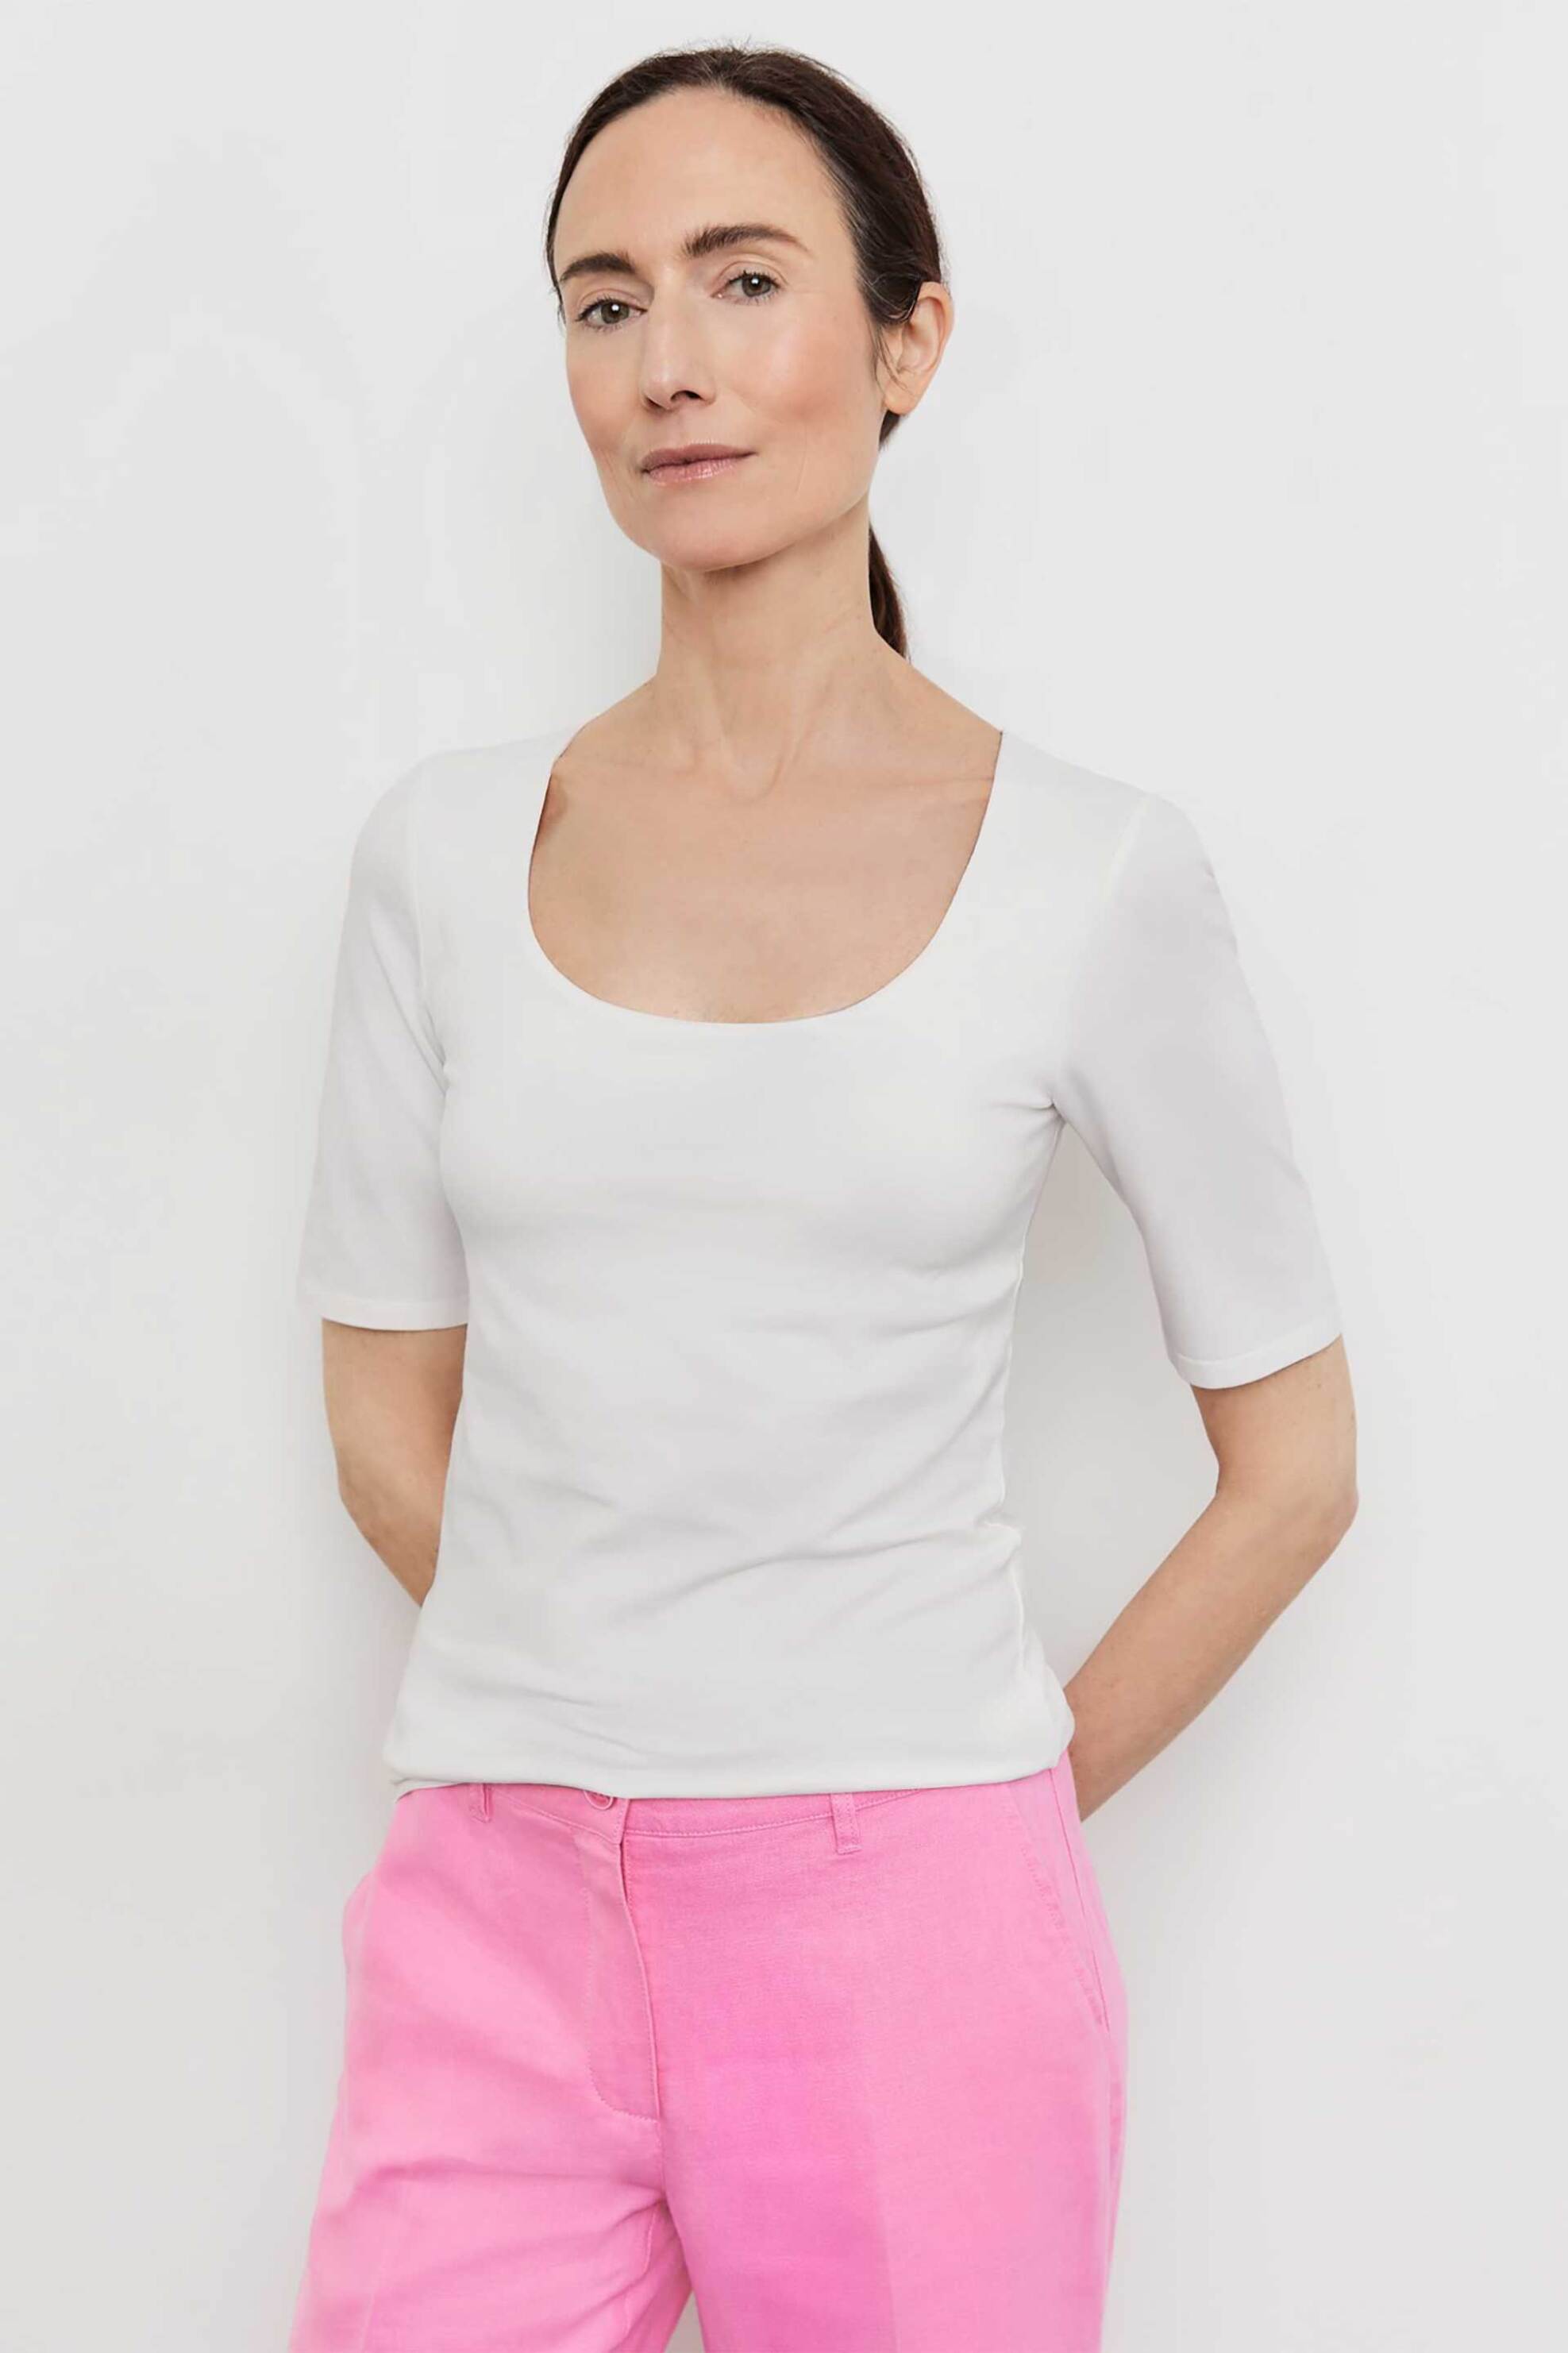 Γυναικεία Ρούχα & Αξεσουάρ > Γυναικεία Ρούχα > Γυναικεία Τοπ > Γυναικεία T-Shirts Gerry Weber γυναικείο μονόχρωμο T-shirt με ανοιχτή λαιμόκοψη - 370201-35005 Λευκό